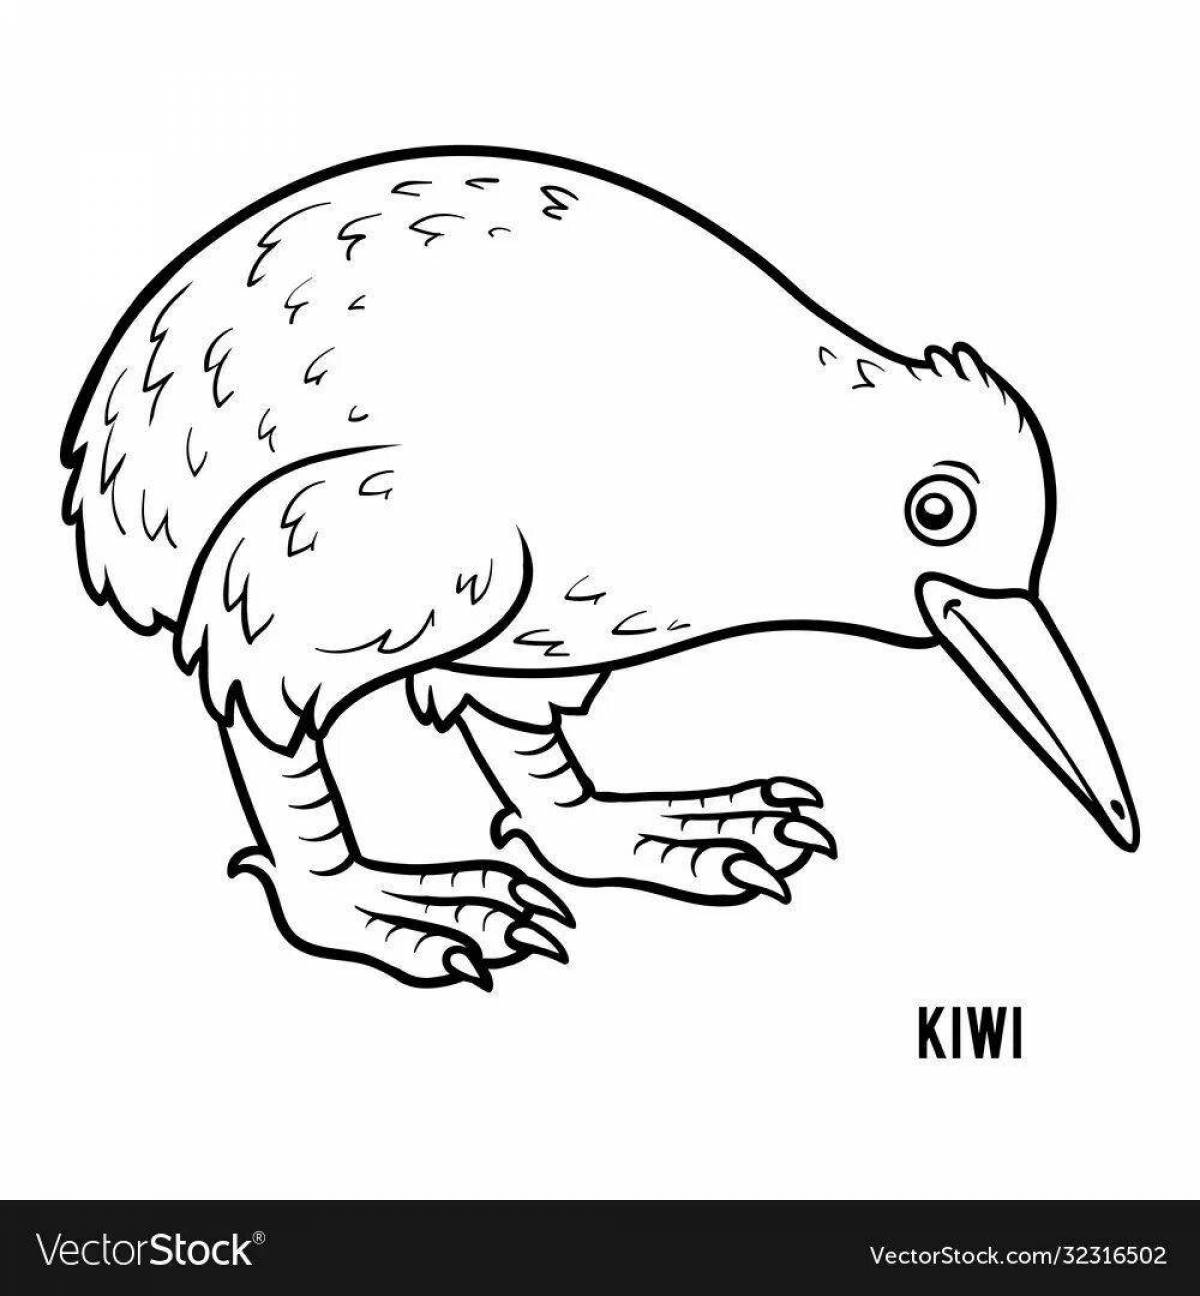 Color explosion kiwi bird coloring page